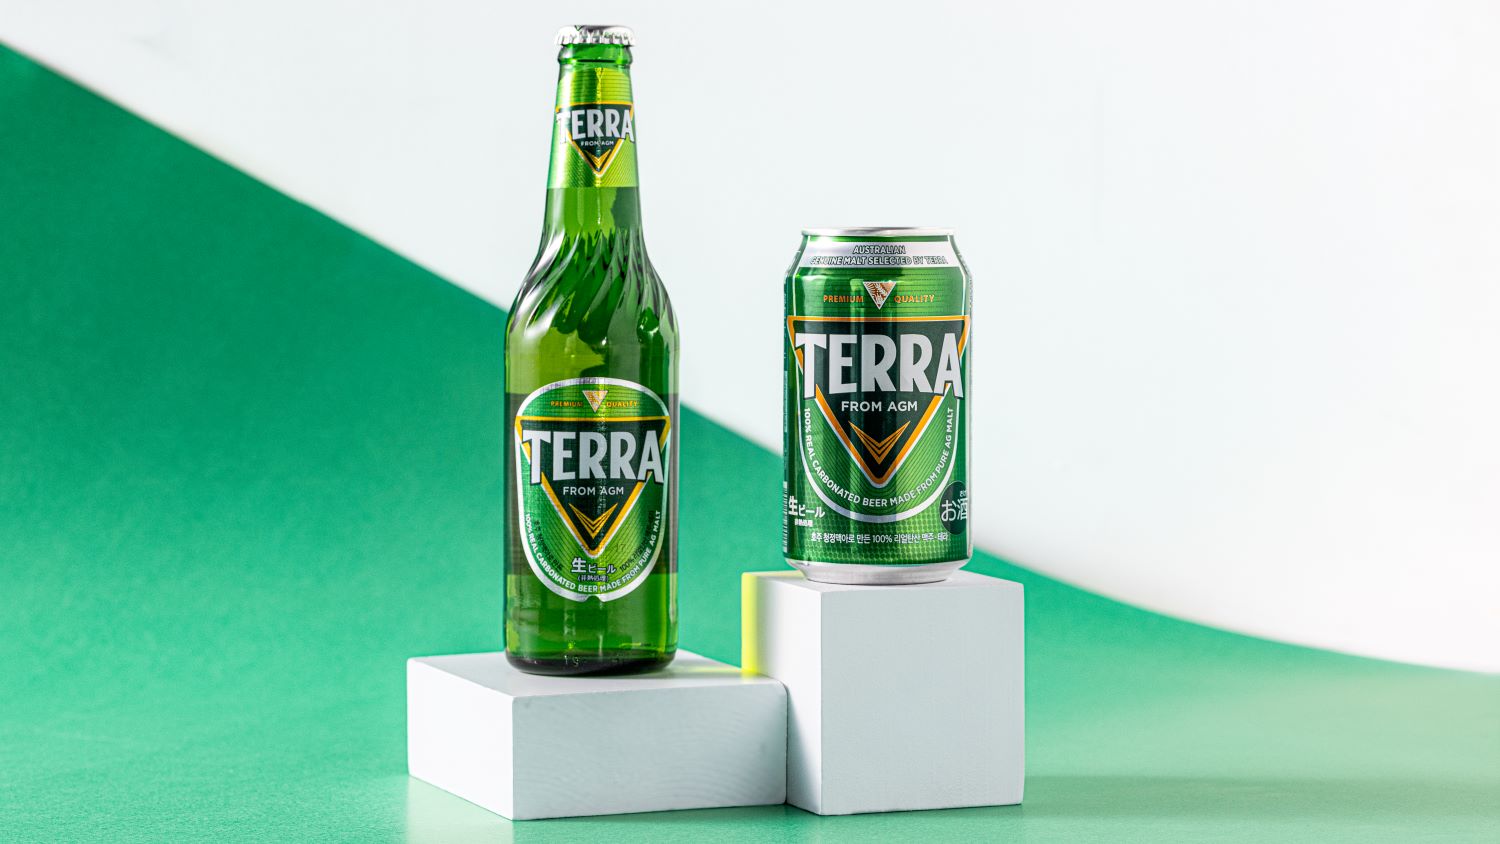 ビール 韓国 TERRA テラ ビール 缶 350ml 24本 眞露 JINRO - 酒